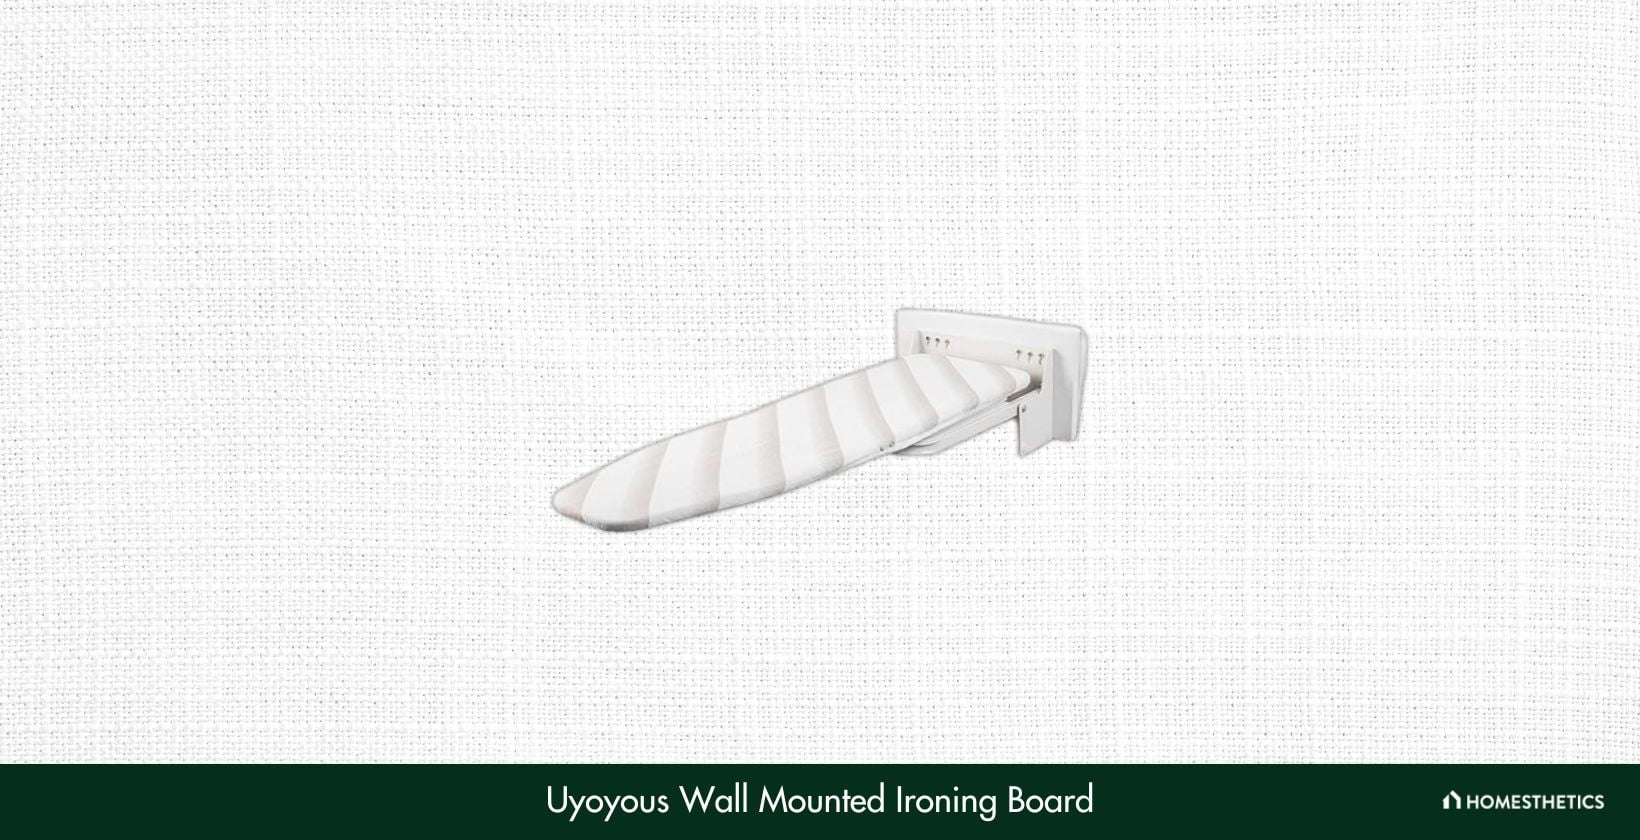 Uyoyous Wall Mounted Ironing Board